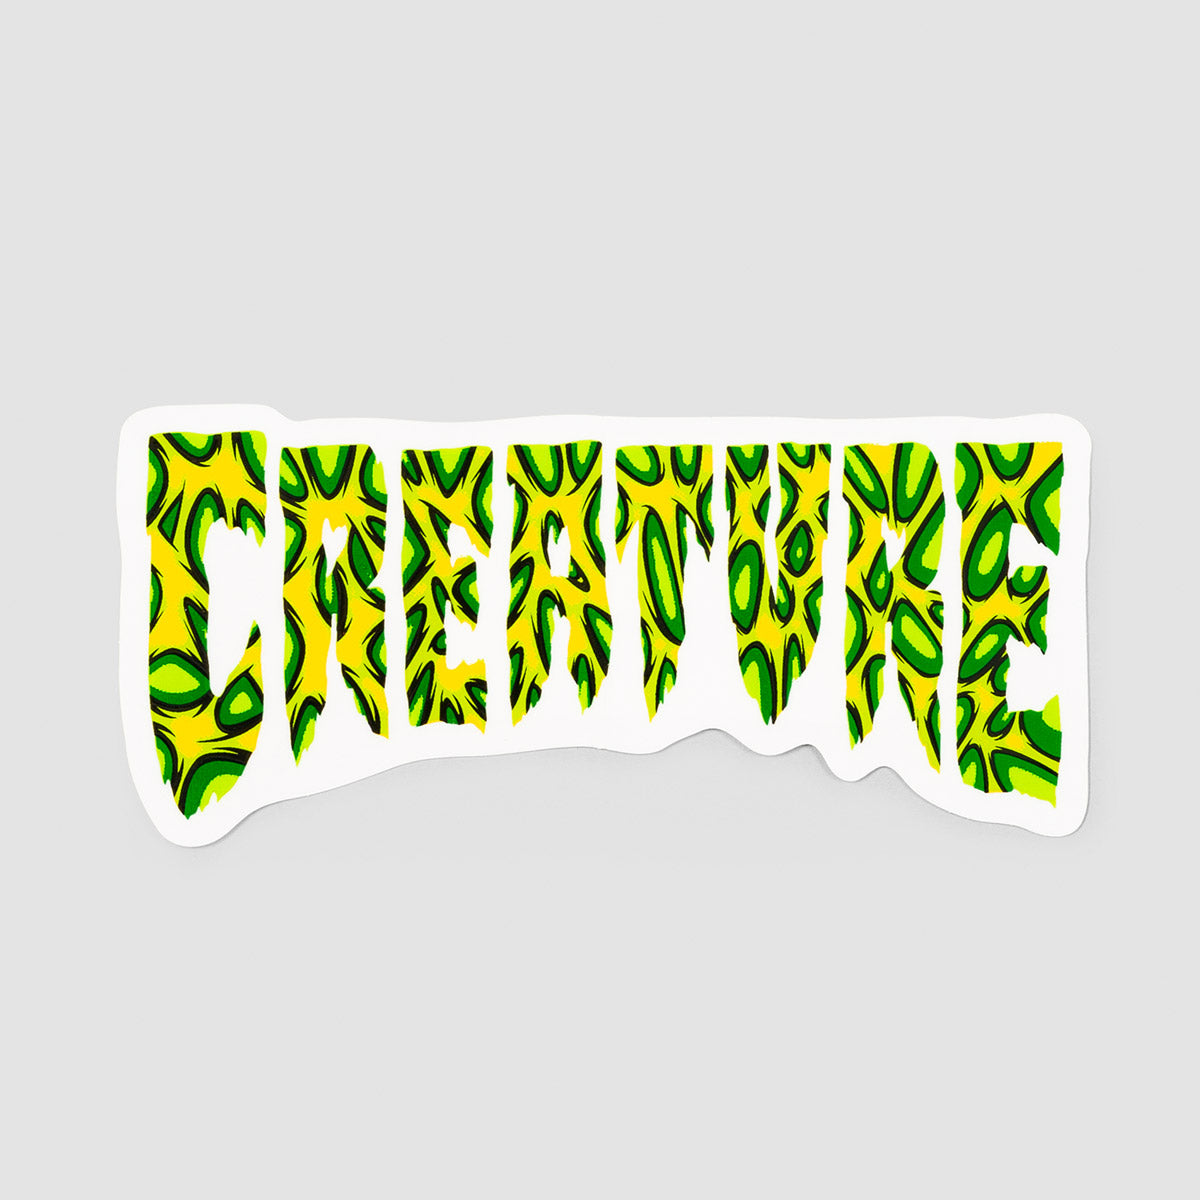 Creature Strains Sticker 110x50mm